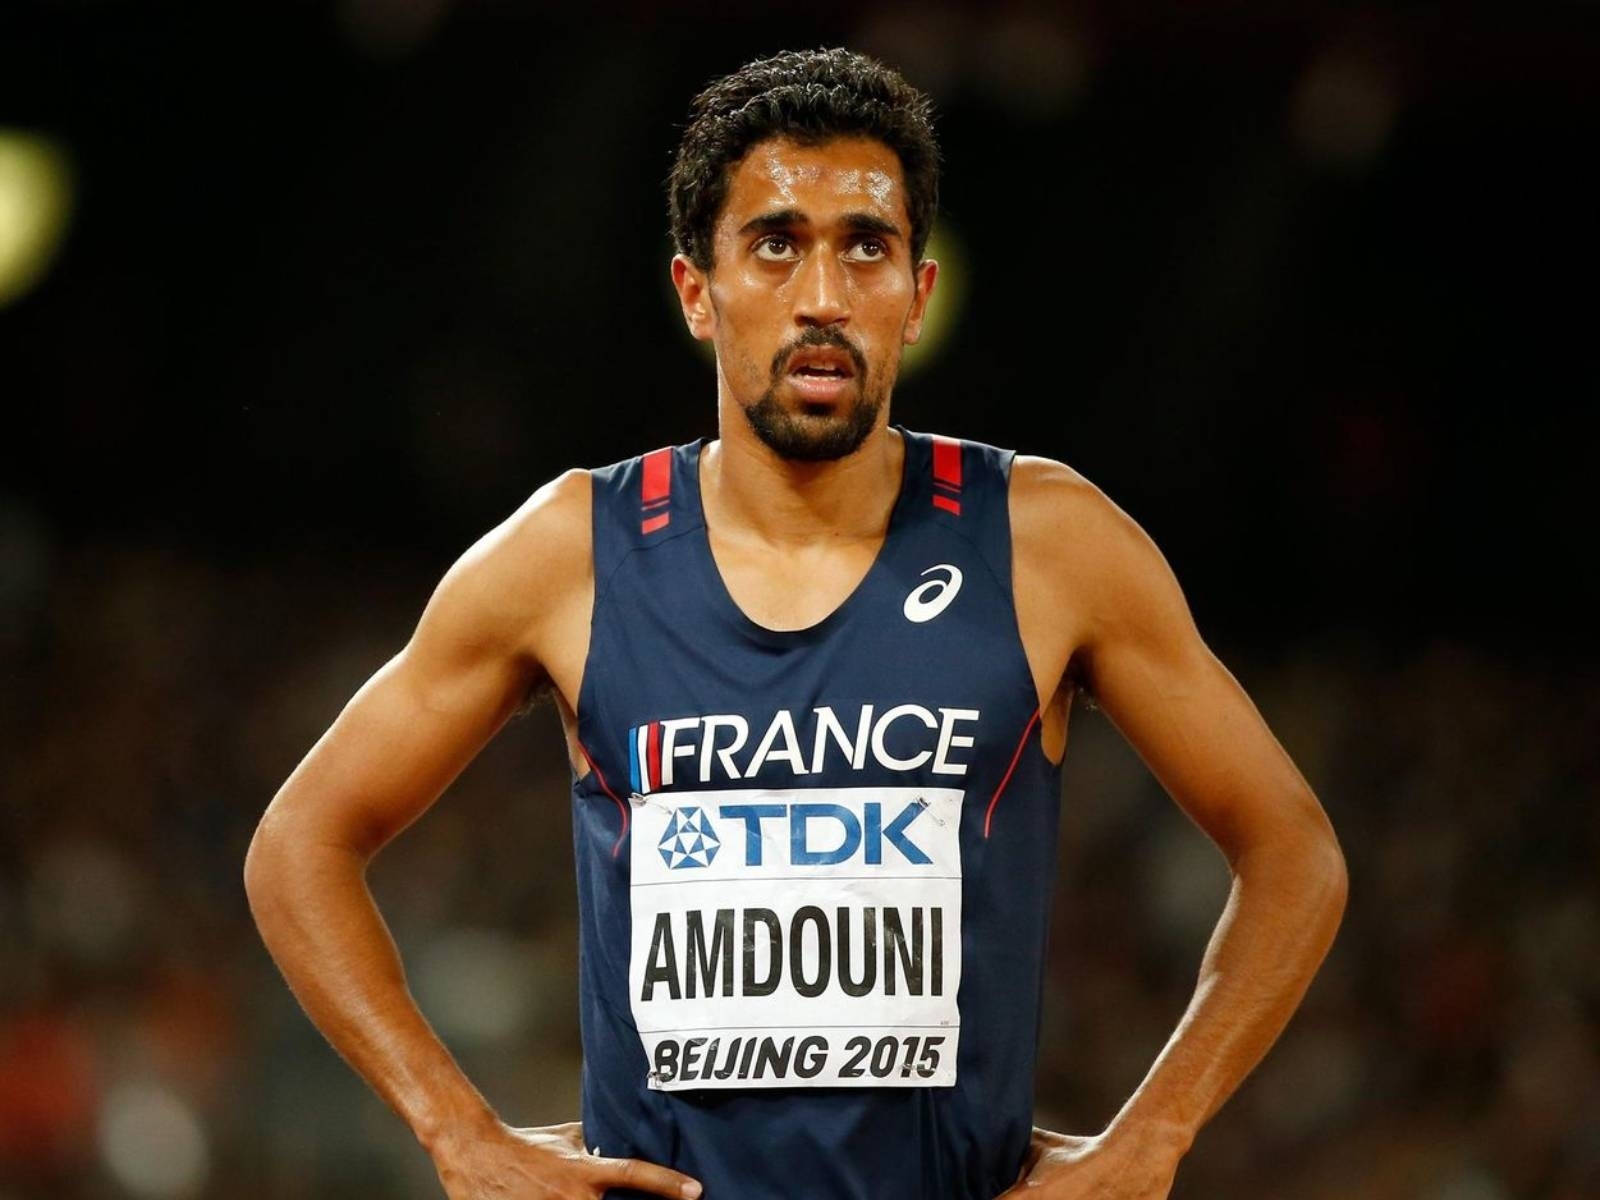 東京奧運／法國選手 Morhad Amdouni 馬拉松狂掃一排水瓶弄倒，本人出面道歉：手滑了！